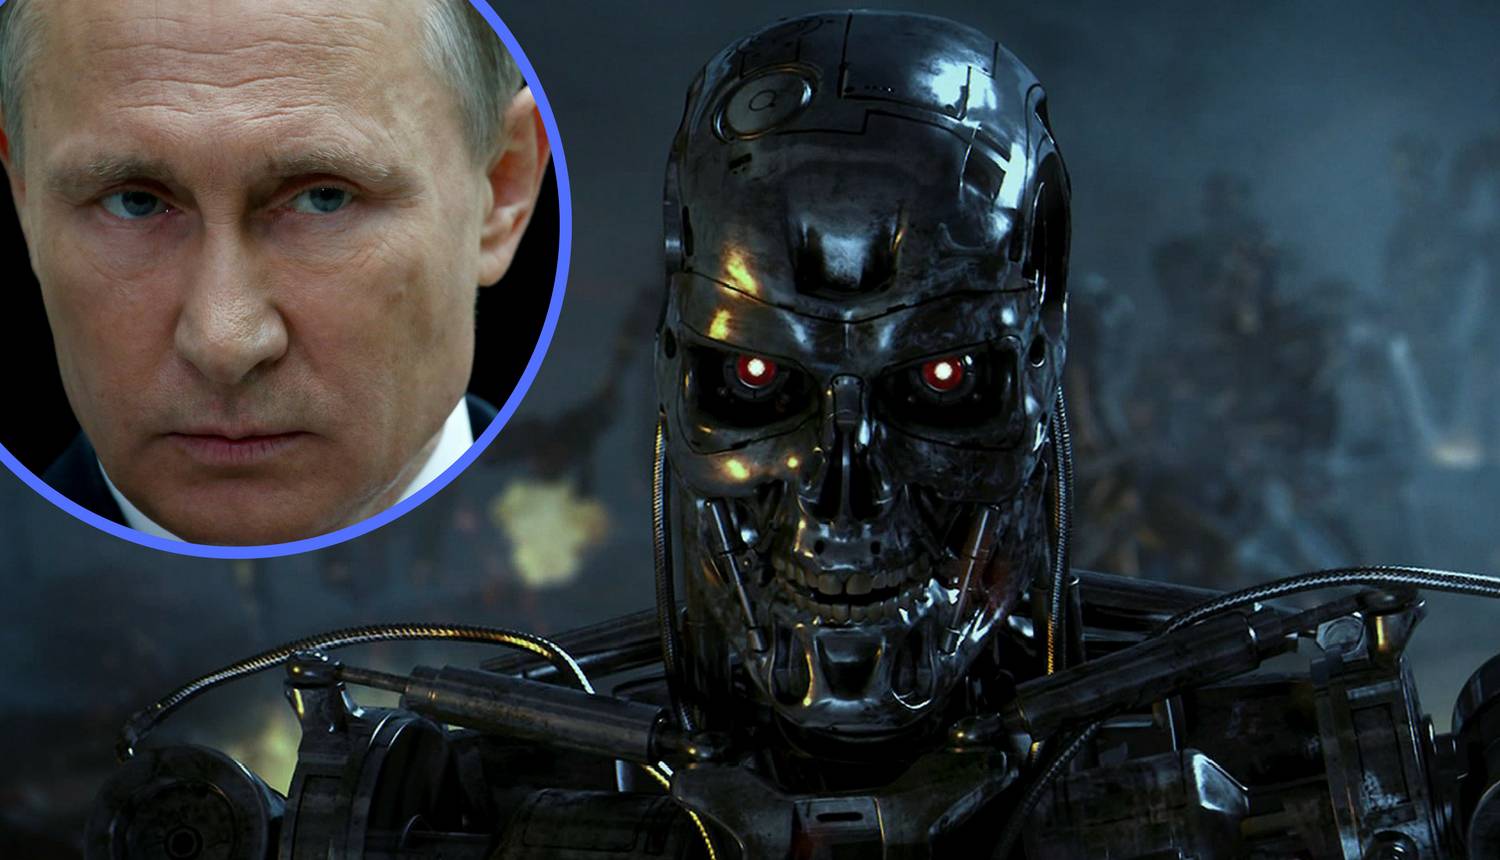 Putin: Tko prvi razvije umjetnu inteligenciju vladat će svijetom